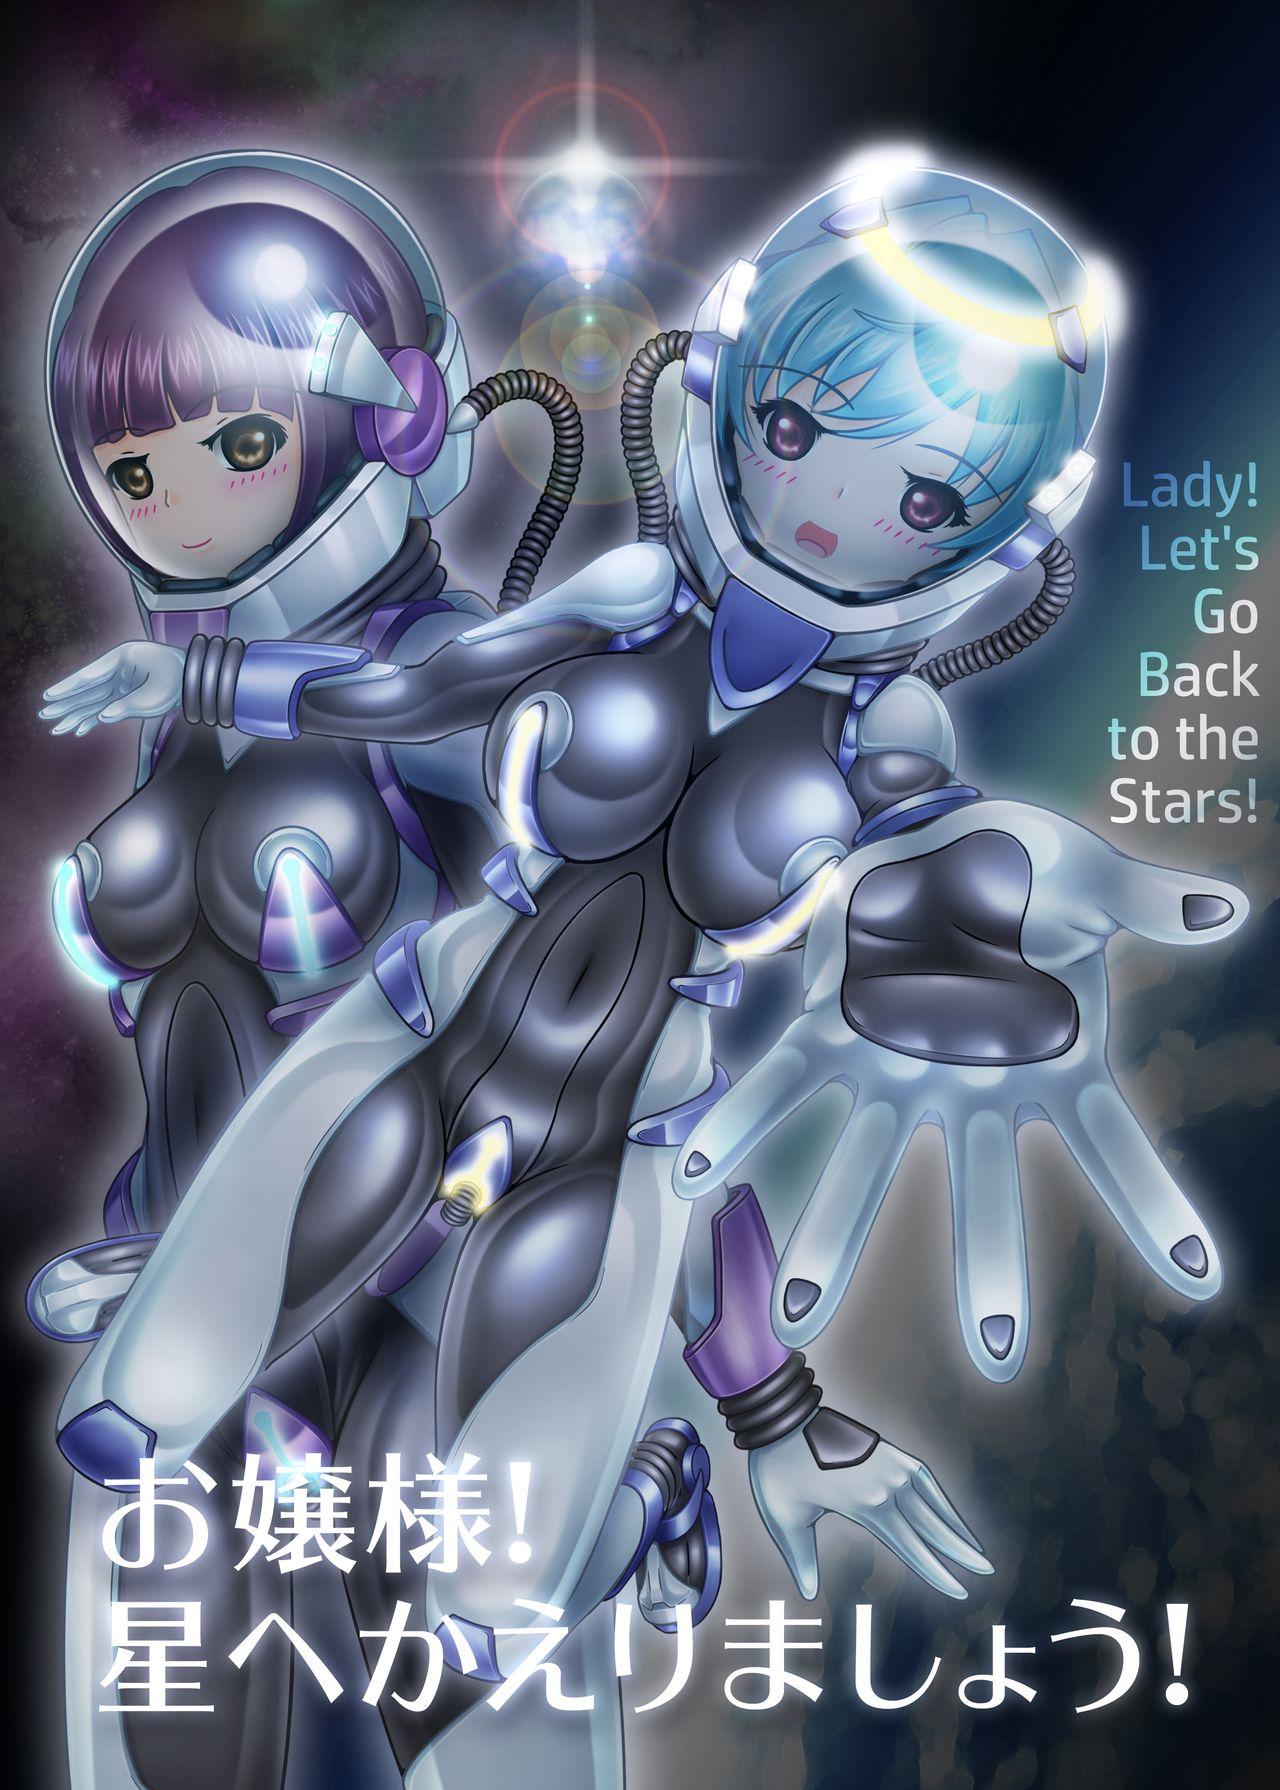 Ojou-sama! Hoshi e Kaerimashou!! | Lady! Let's Go Back to the Stars! 0